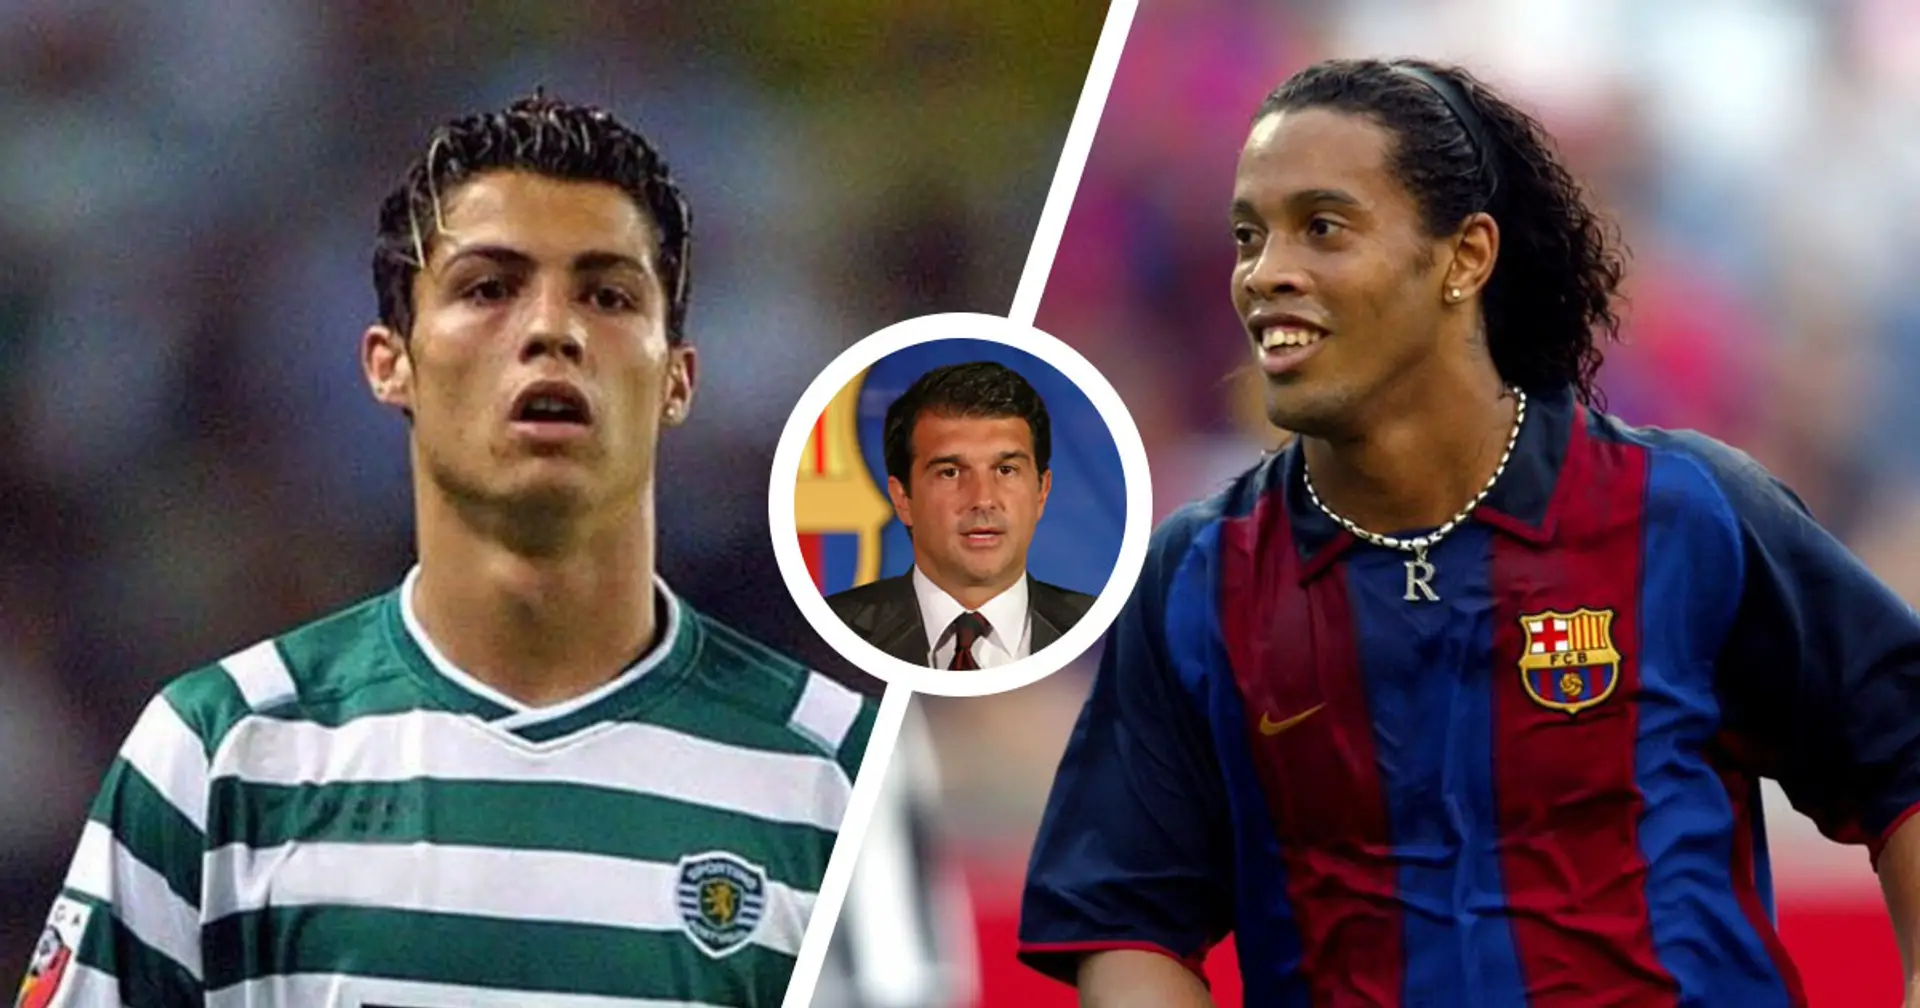 Laporta spiega perché il Barcellona preferì Ronaldinho a Cristiano Ronaldo nel 2003